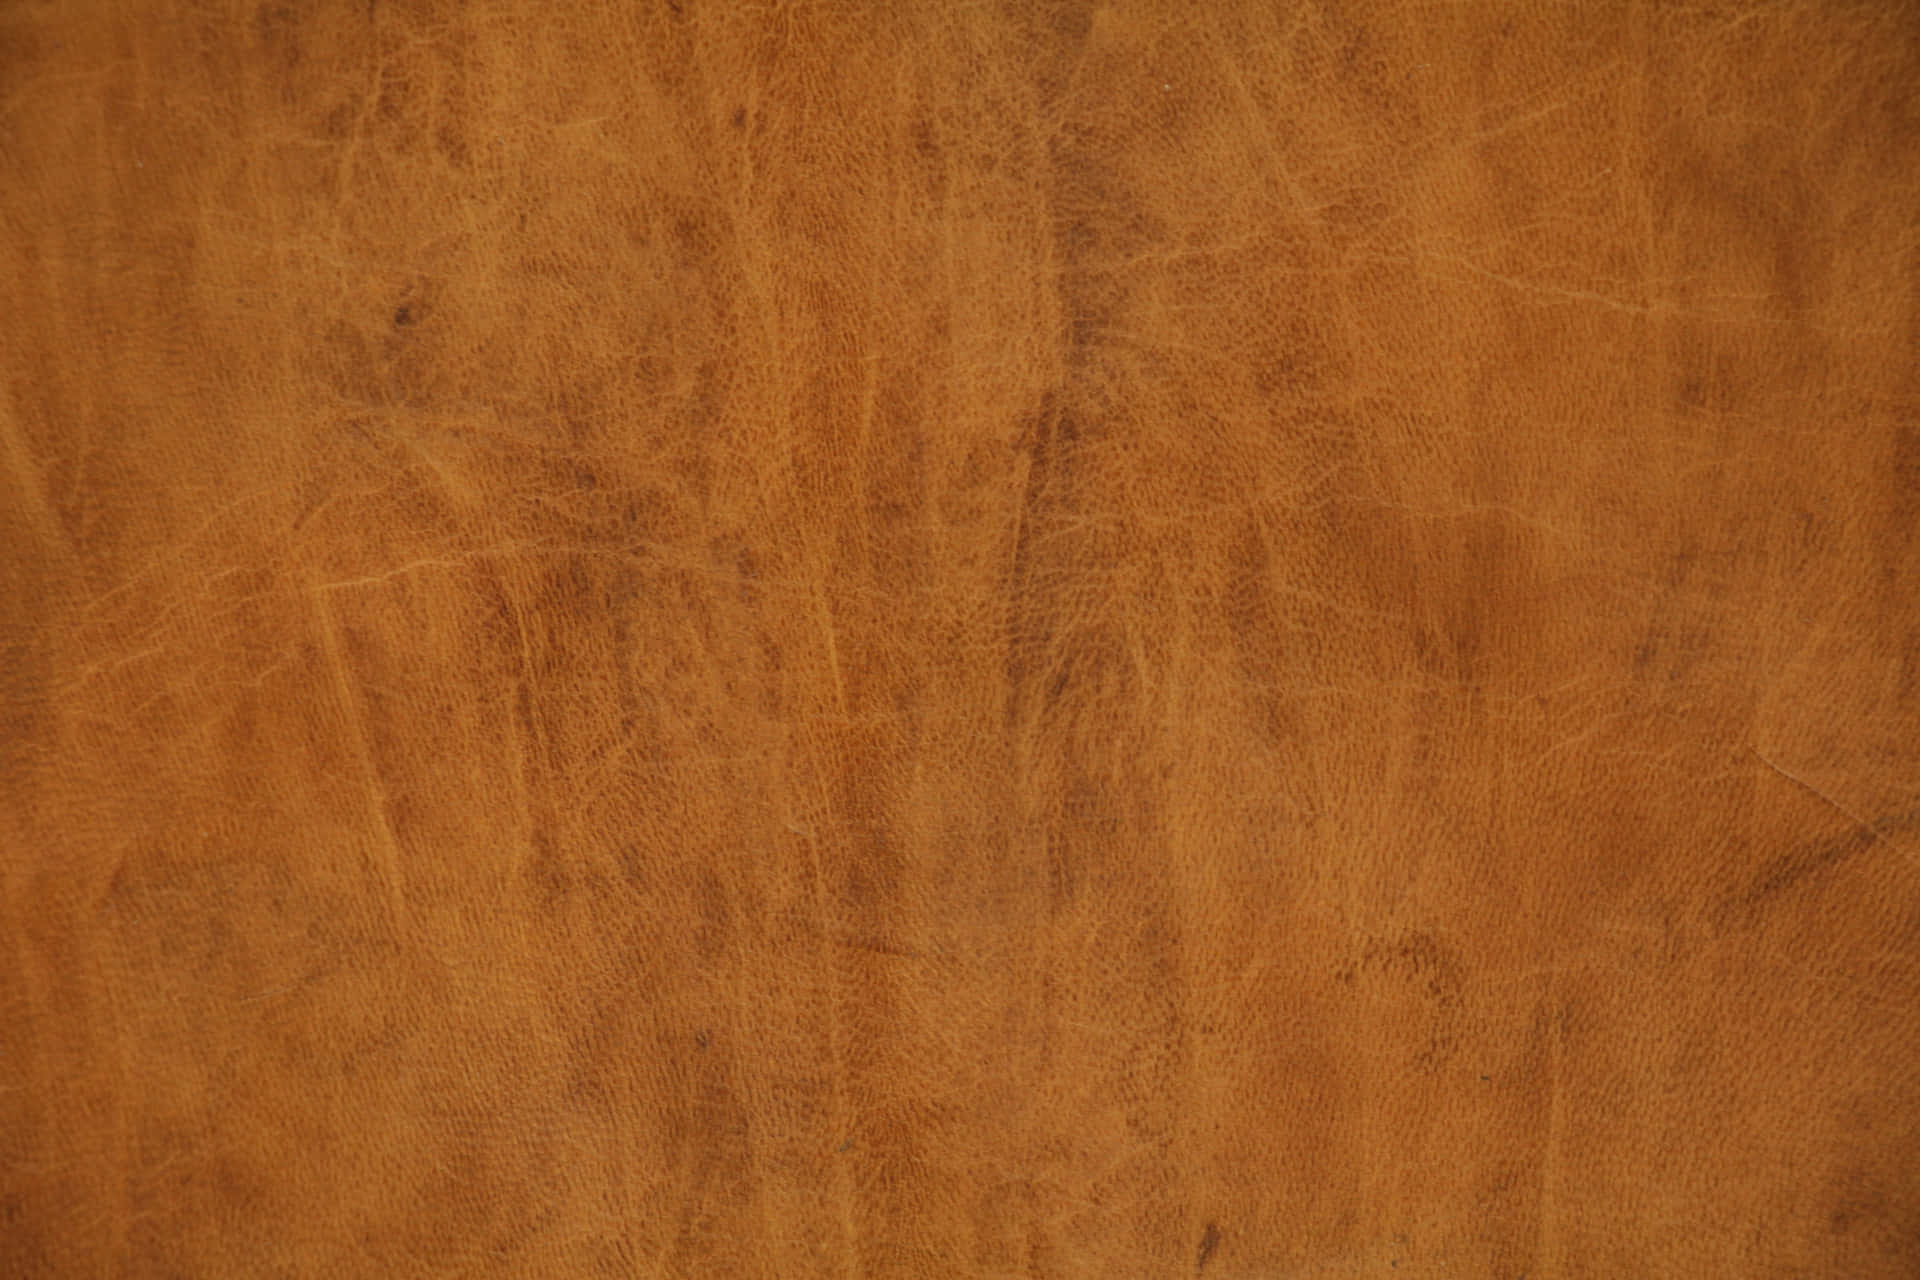 Læder Texture 4000 X 2667 Wallpaper